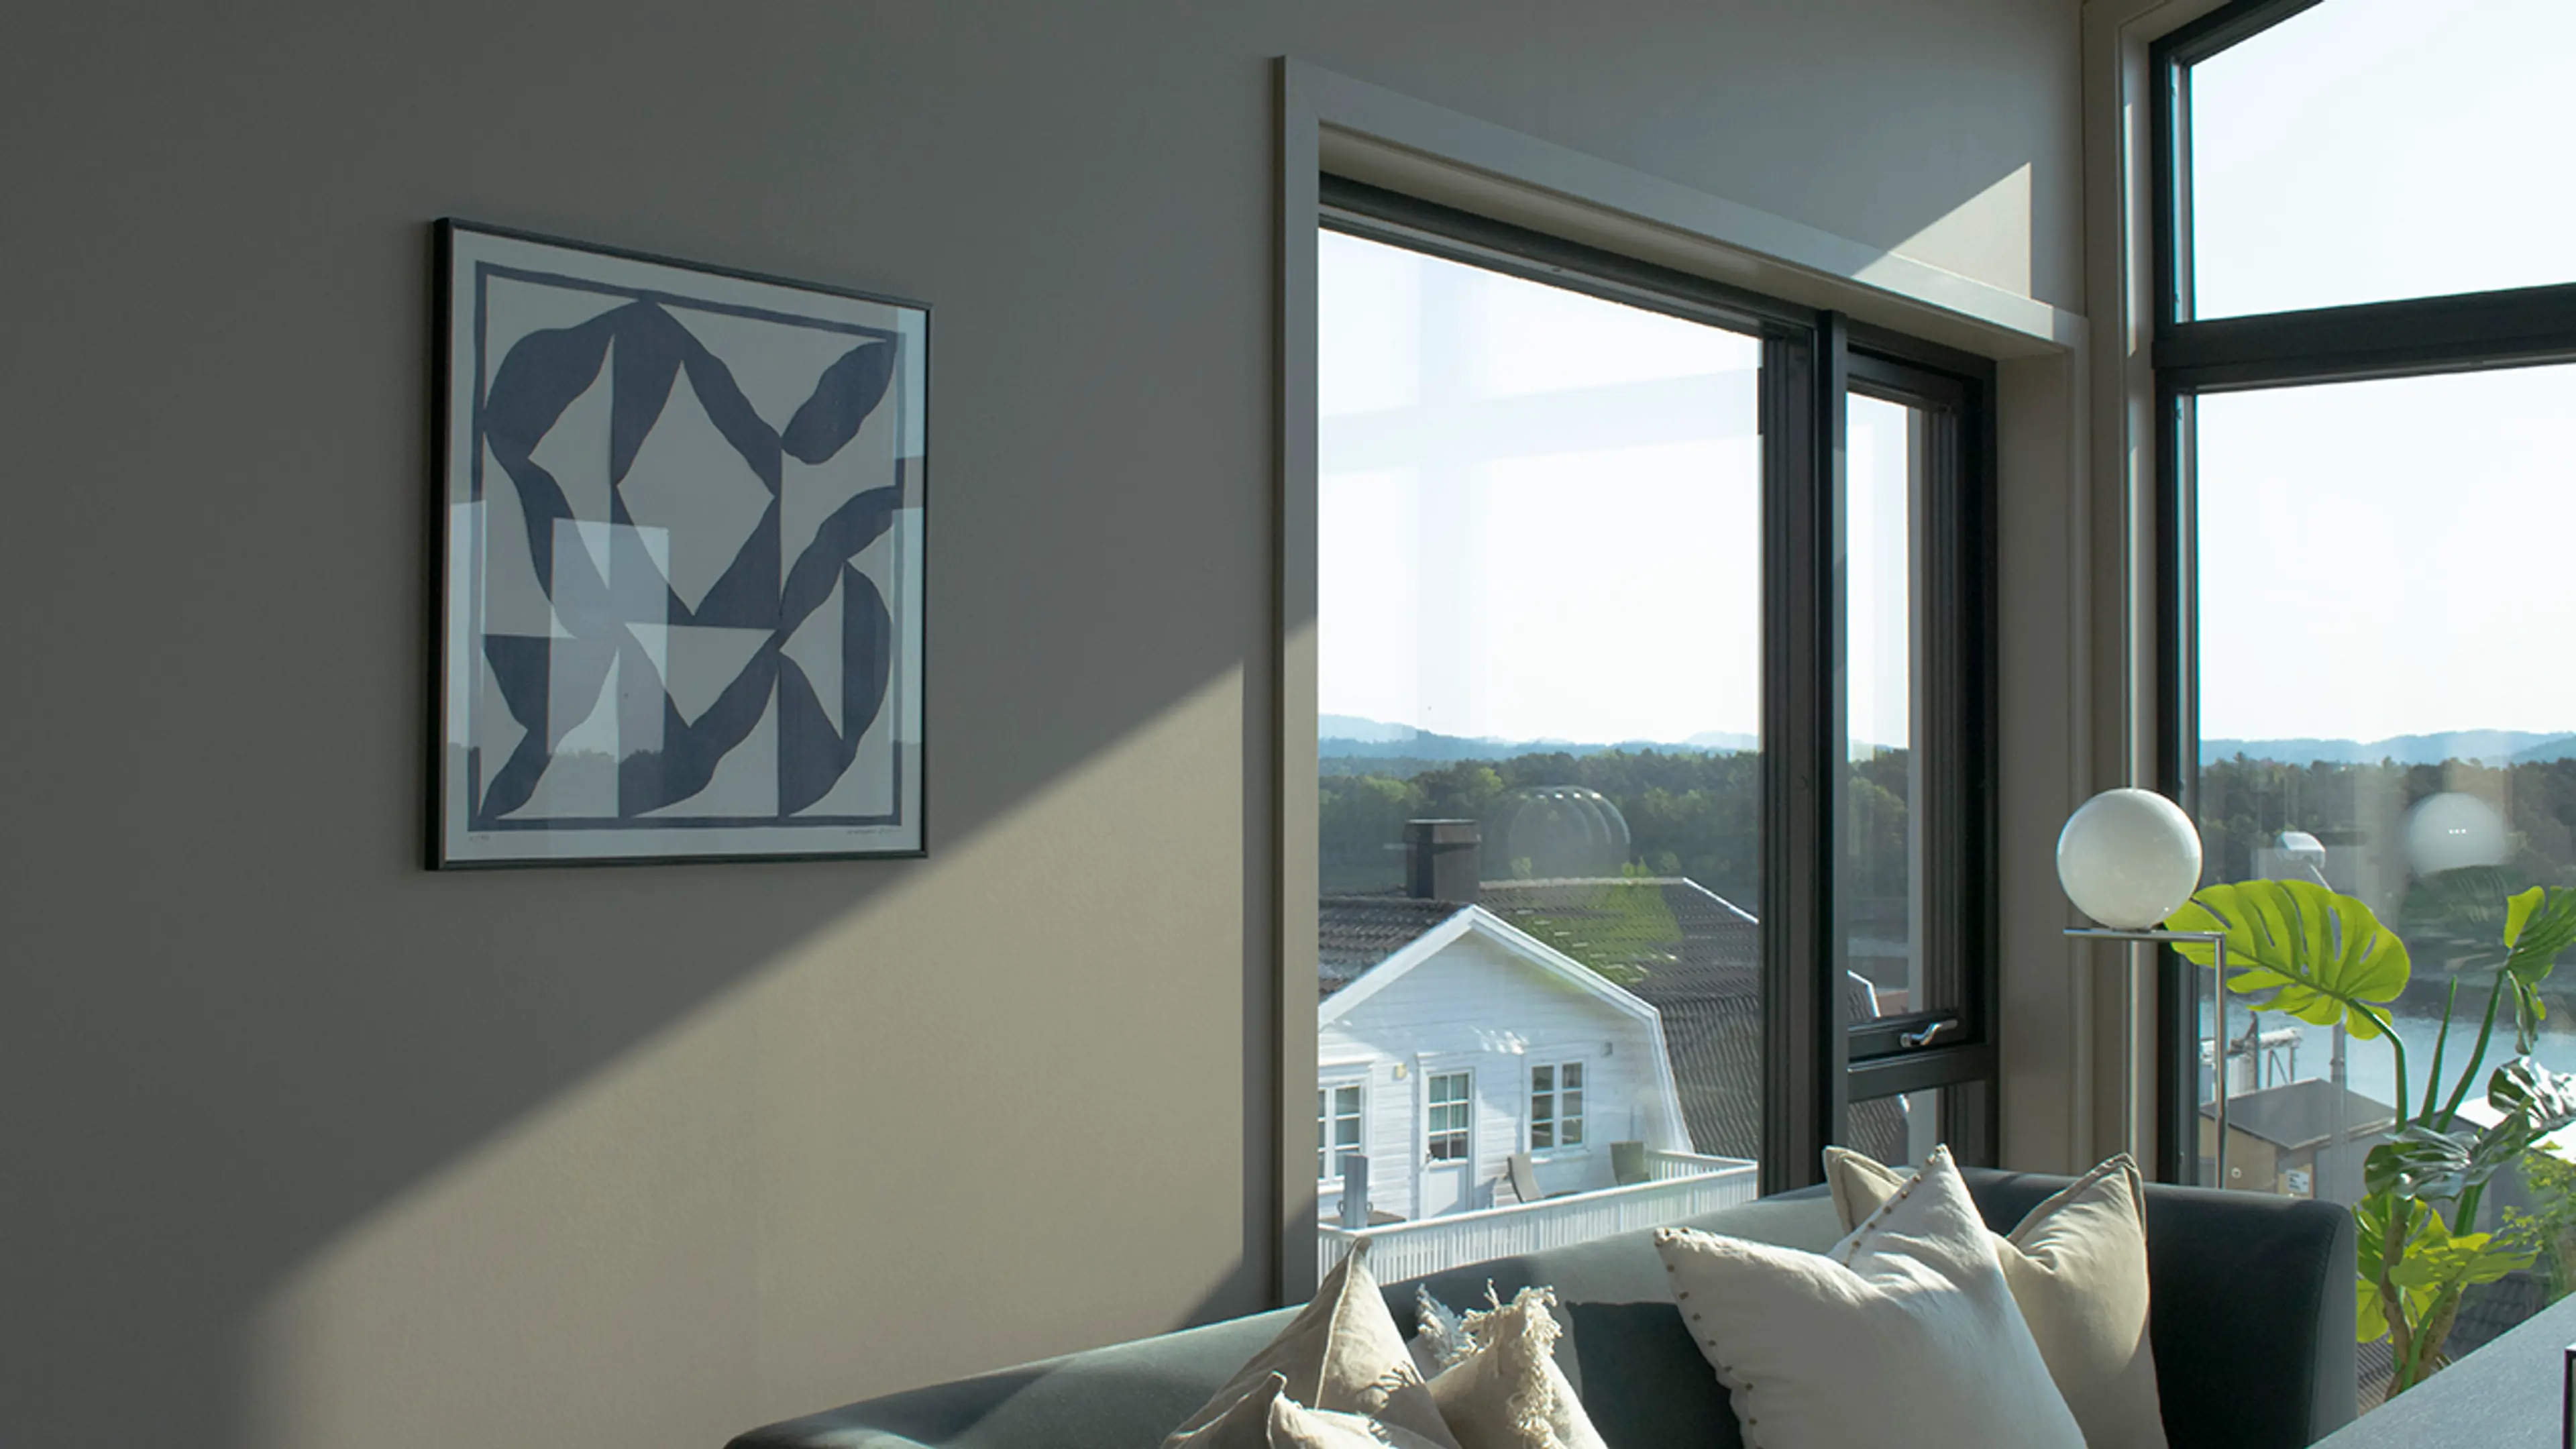 Gråbeige stue i moderne hus med glatte lister rundt vinduene.